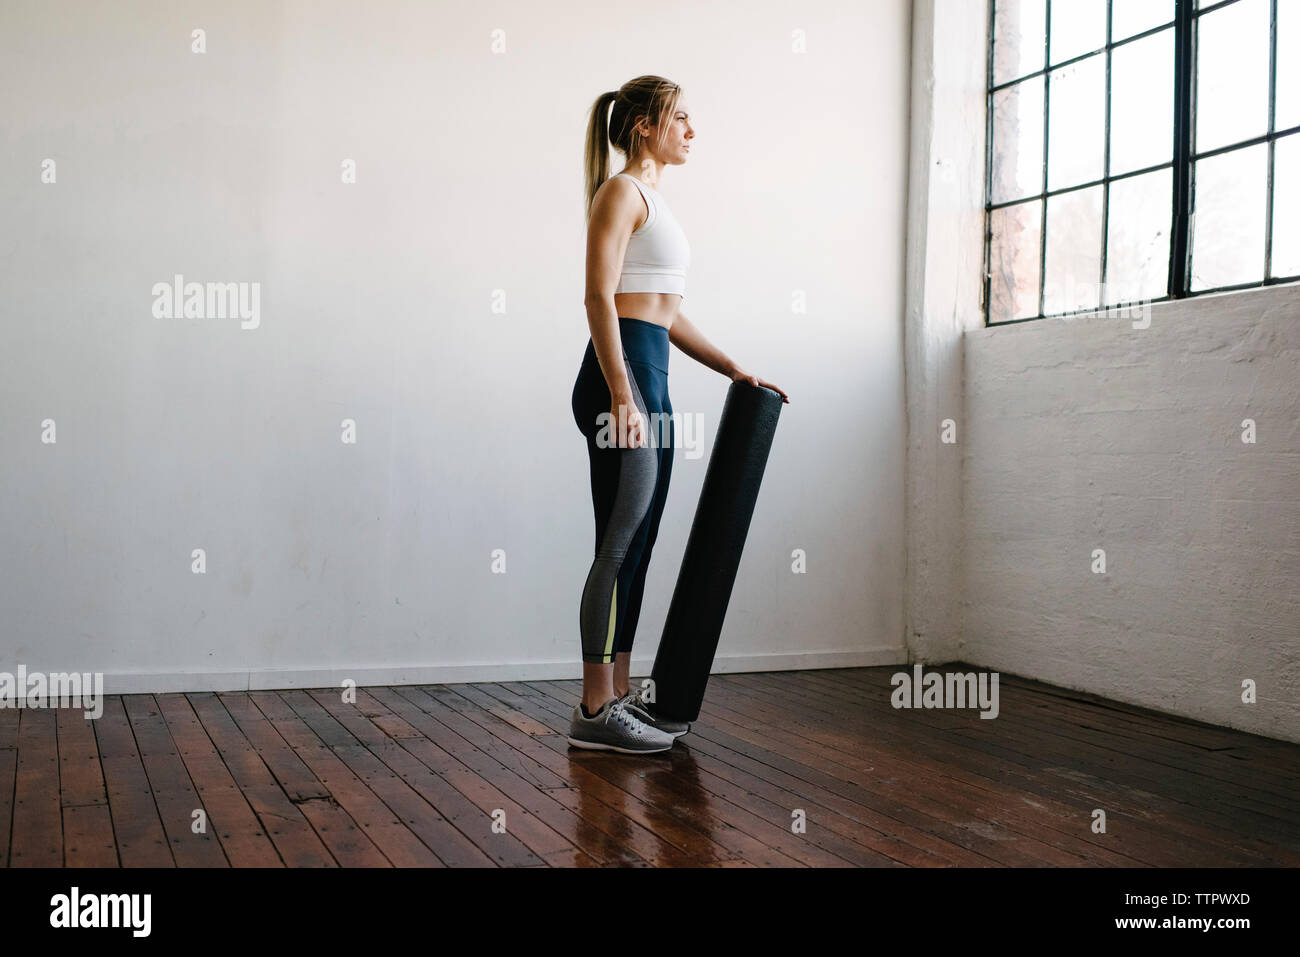 Vista lateral de la mujer sosteniendo equipos para hacer ejercicio mientras está parado en el gimnasio Foto de stock